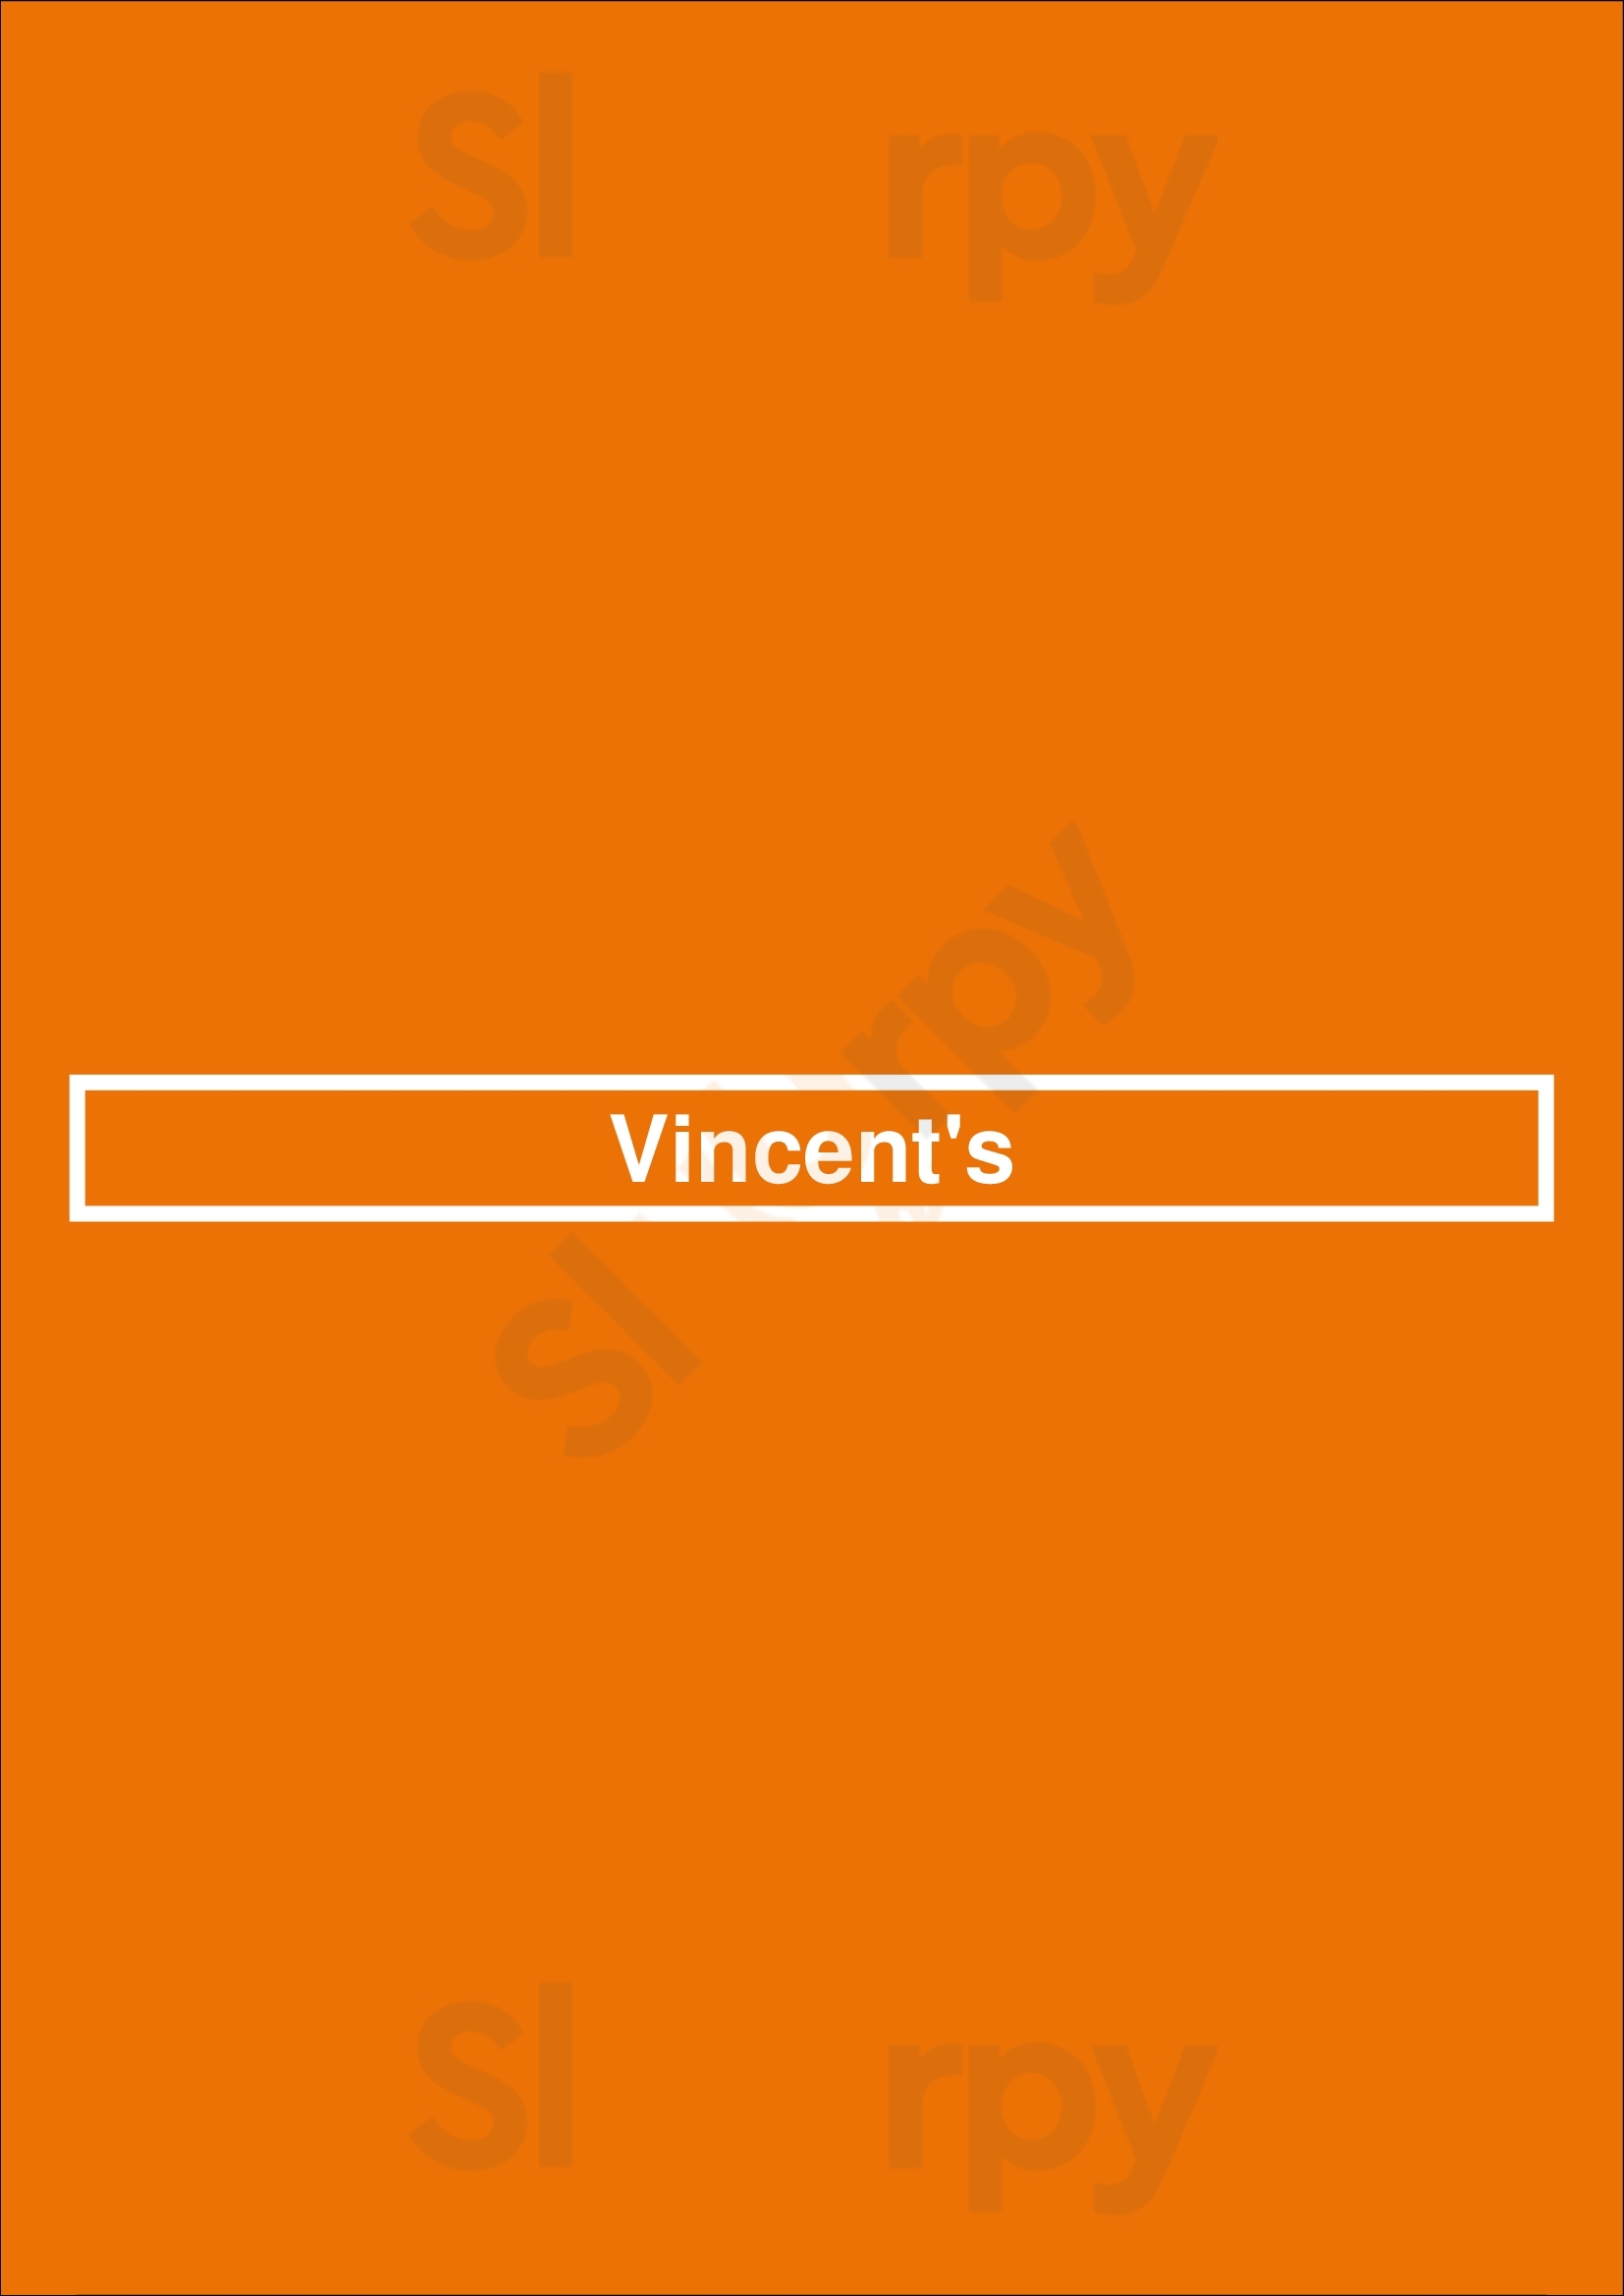 Vincent's Houston Menu - 1